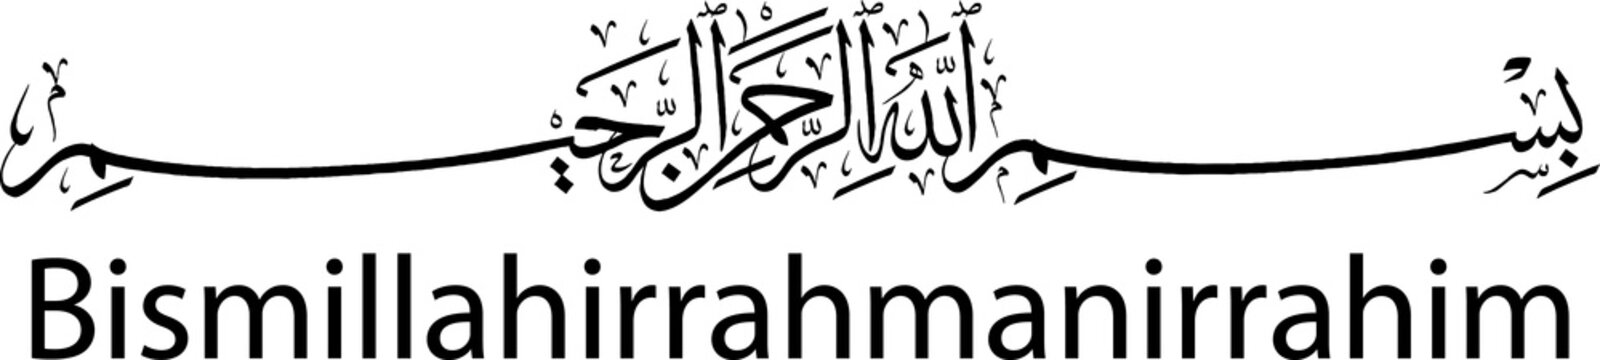 Basmalah (Bismillahirrahmanirrahim) in Arabic Calligraphy Thuluth, Black Color